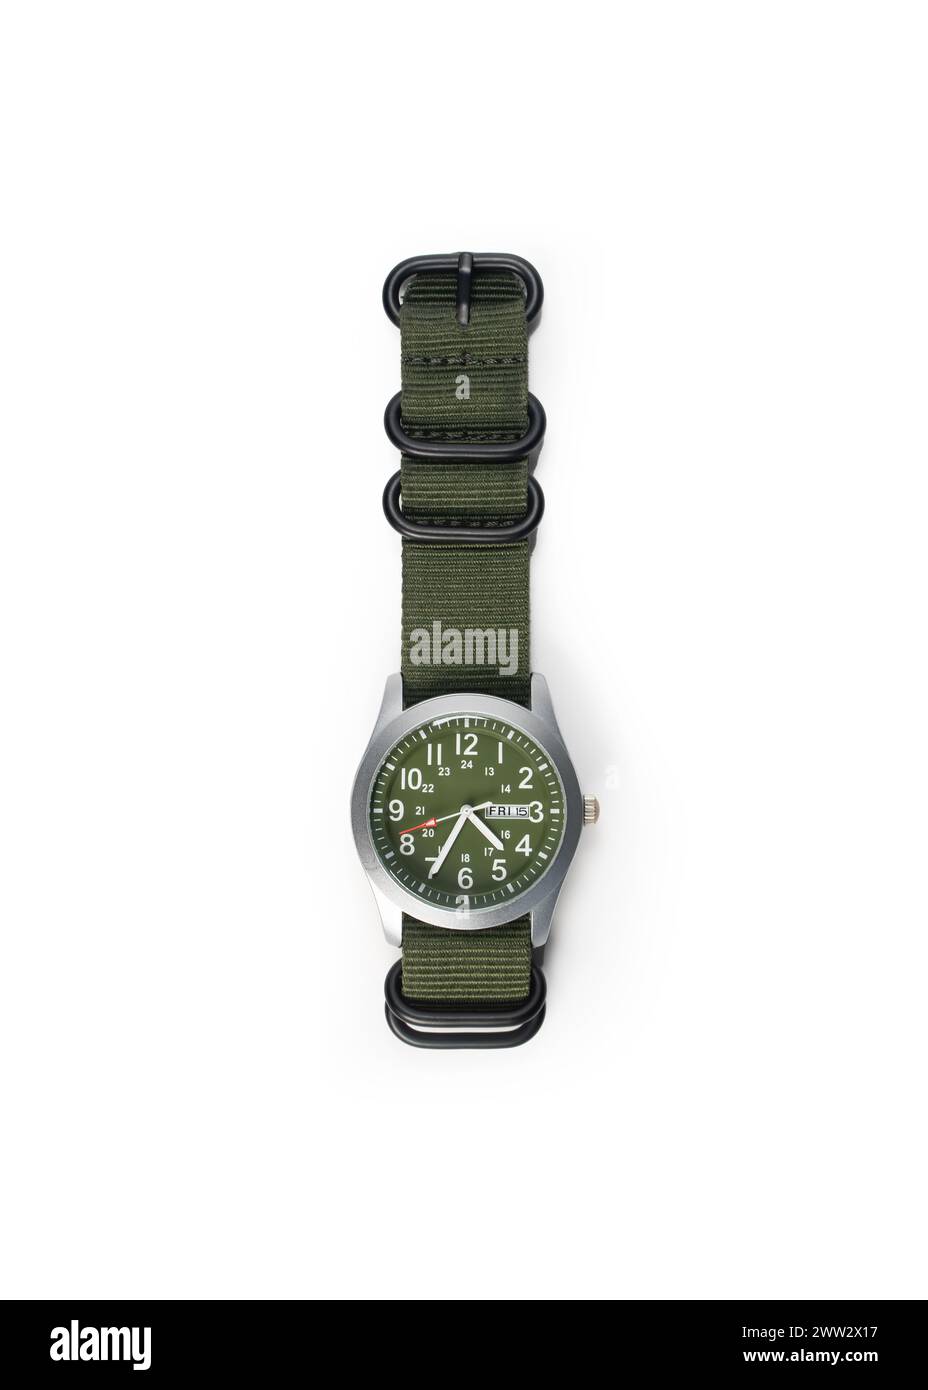 Flat Lay Top Vista de Un reloj de campo verde militar genérico, aislado sobre fondo blanco Foto de stock